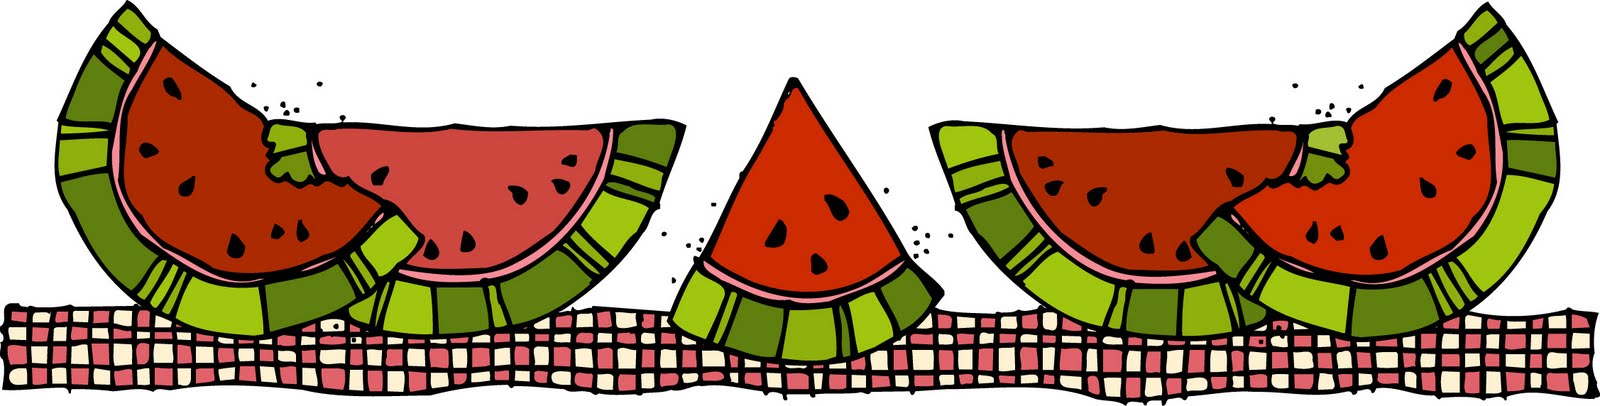 Free Watermelon Border Cliparts, Download Free Clip Art